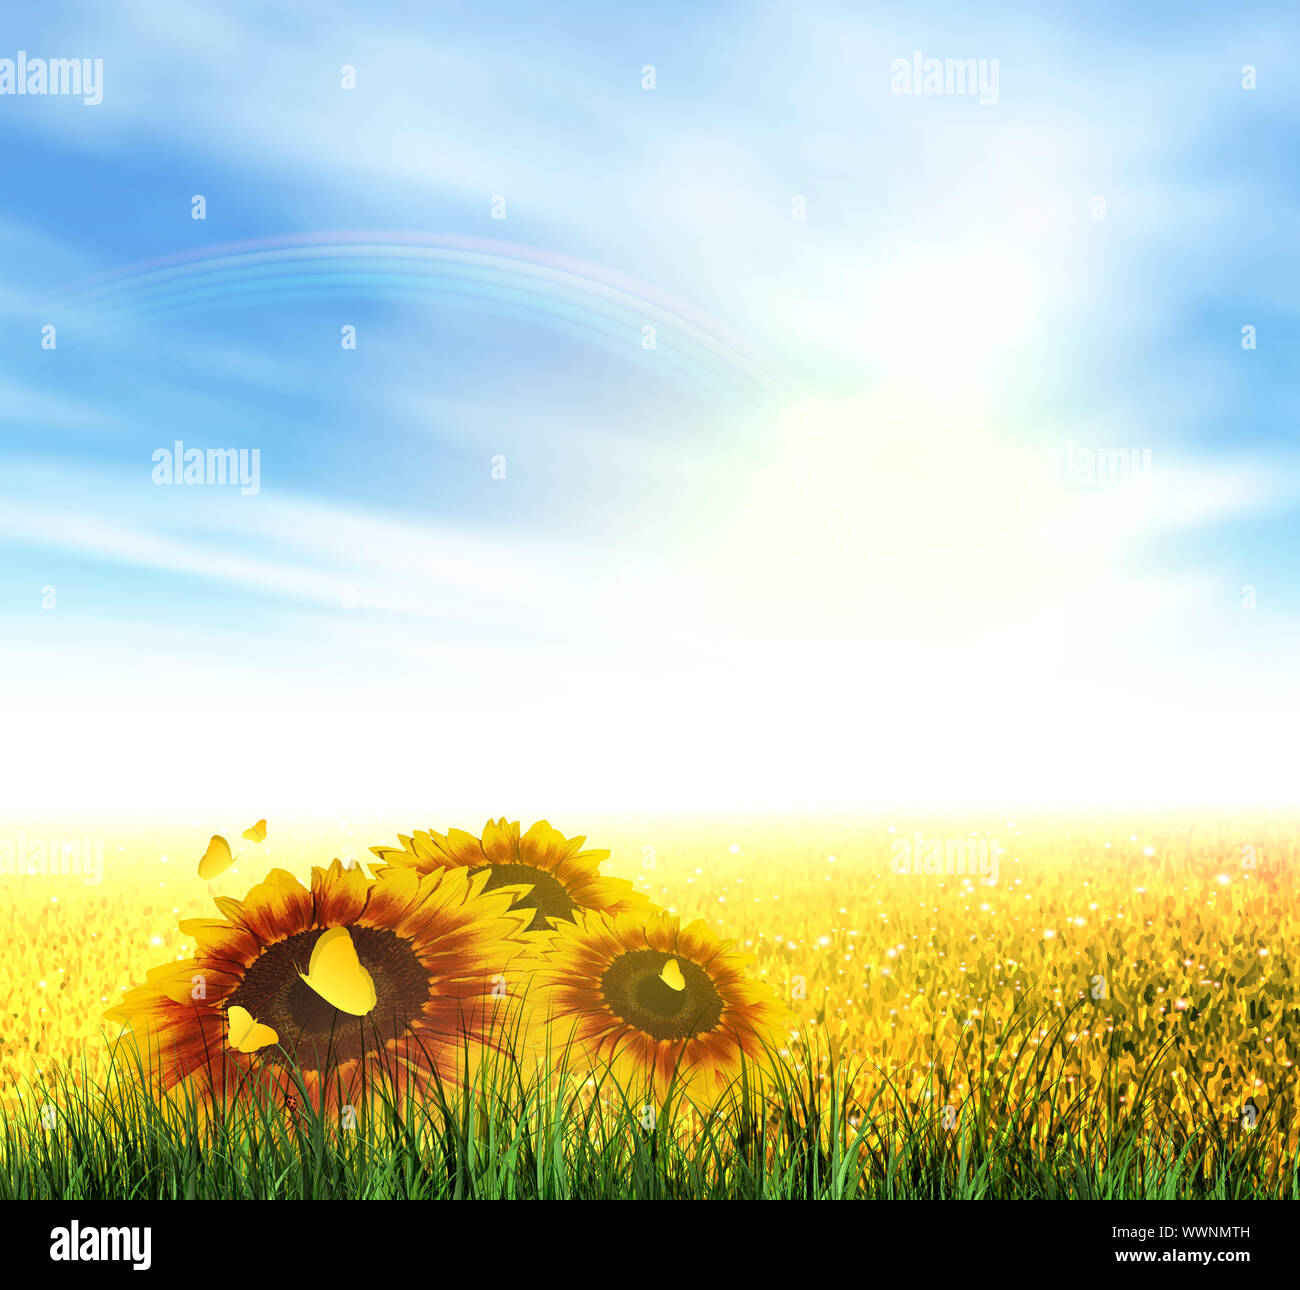 Sommer, Feld, Himmel, Sonne, Regenbogen, Gras, Sonnenblumen Stockfoto